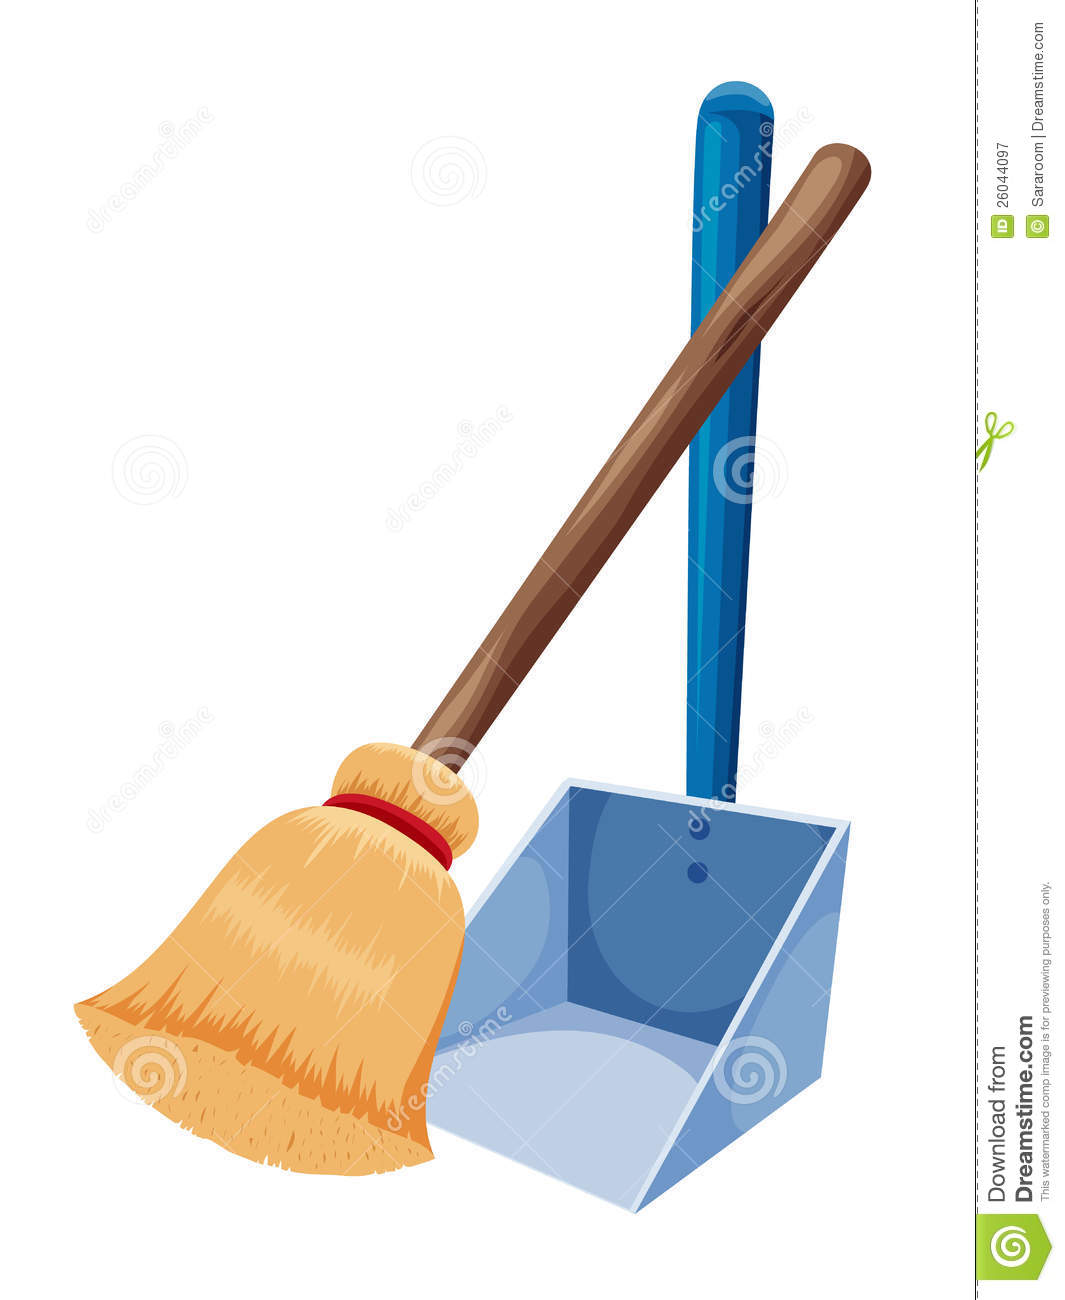 Broom dusting